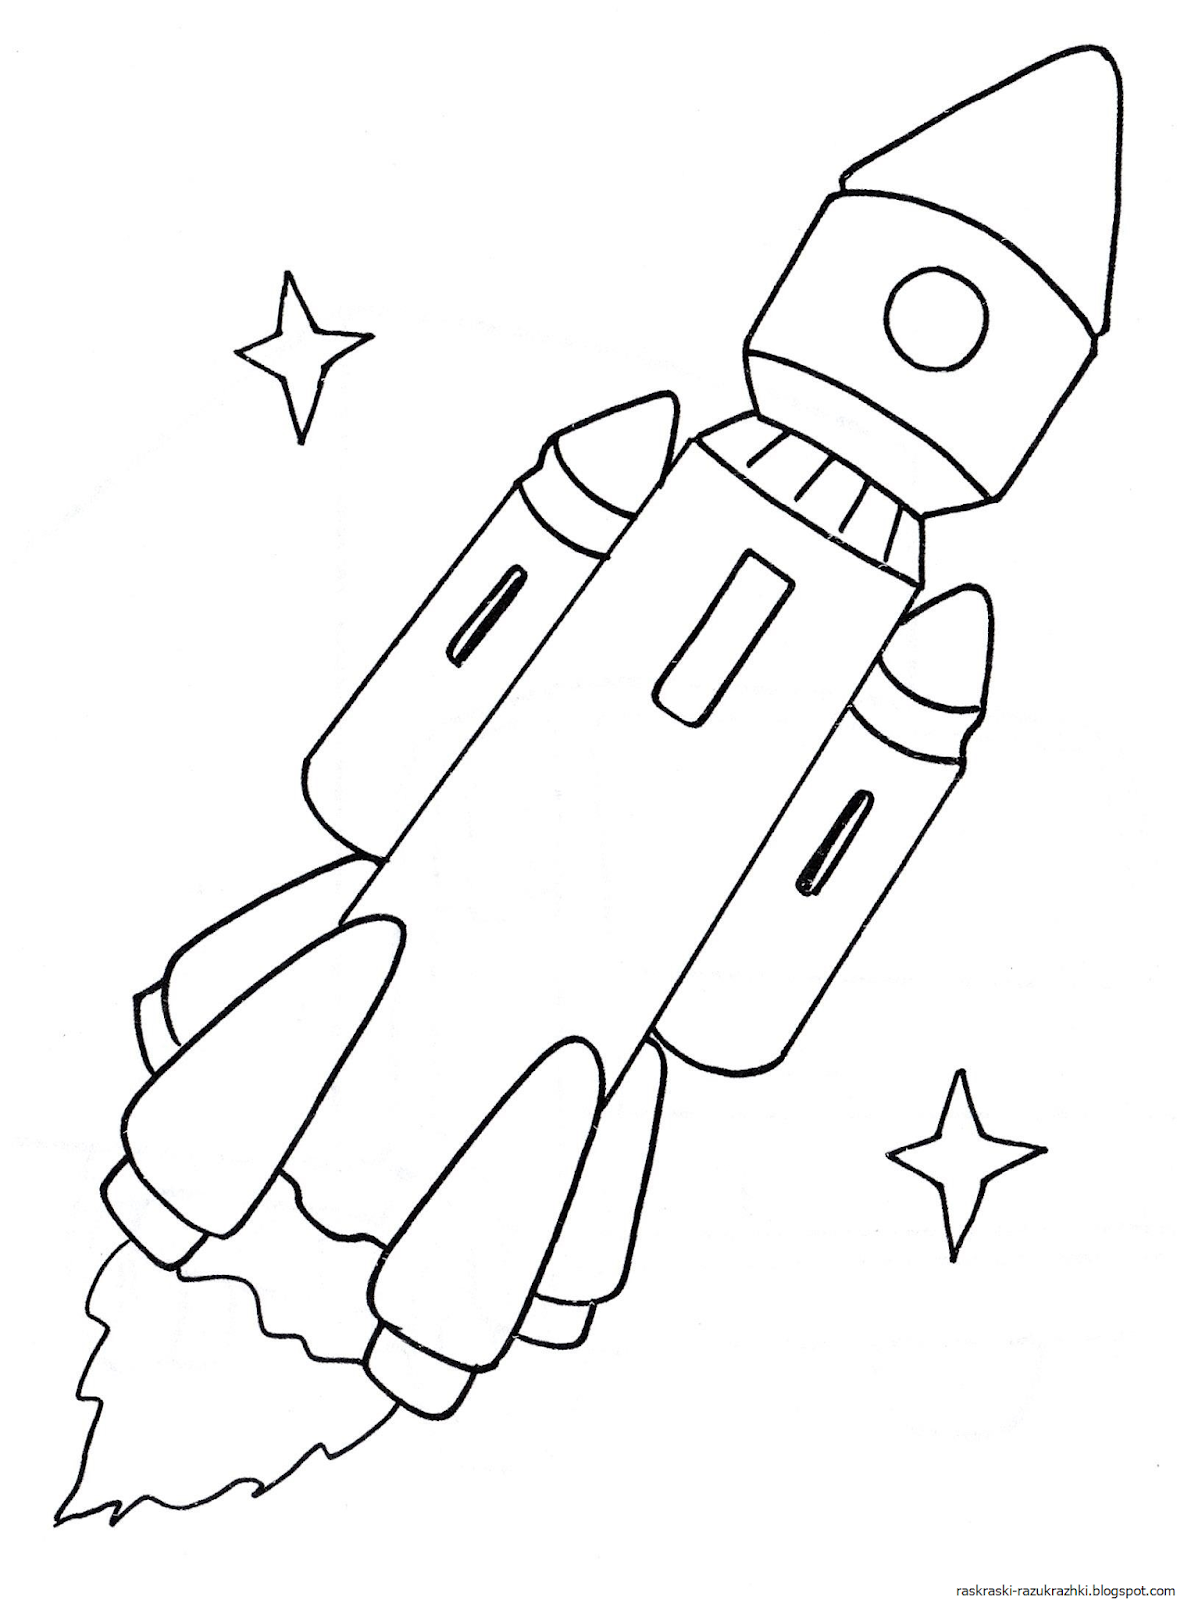 Ракета раскрасить. Ракета раскраска. Ракета раскраска для детей. Космическая ракета раскраска. Космический корабль раскраска.